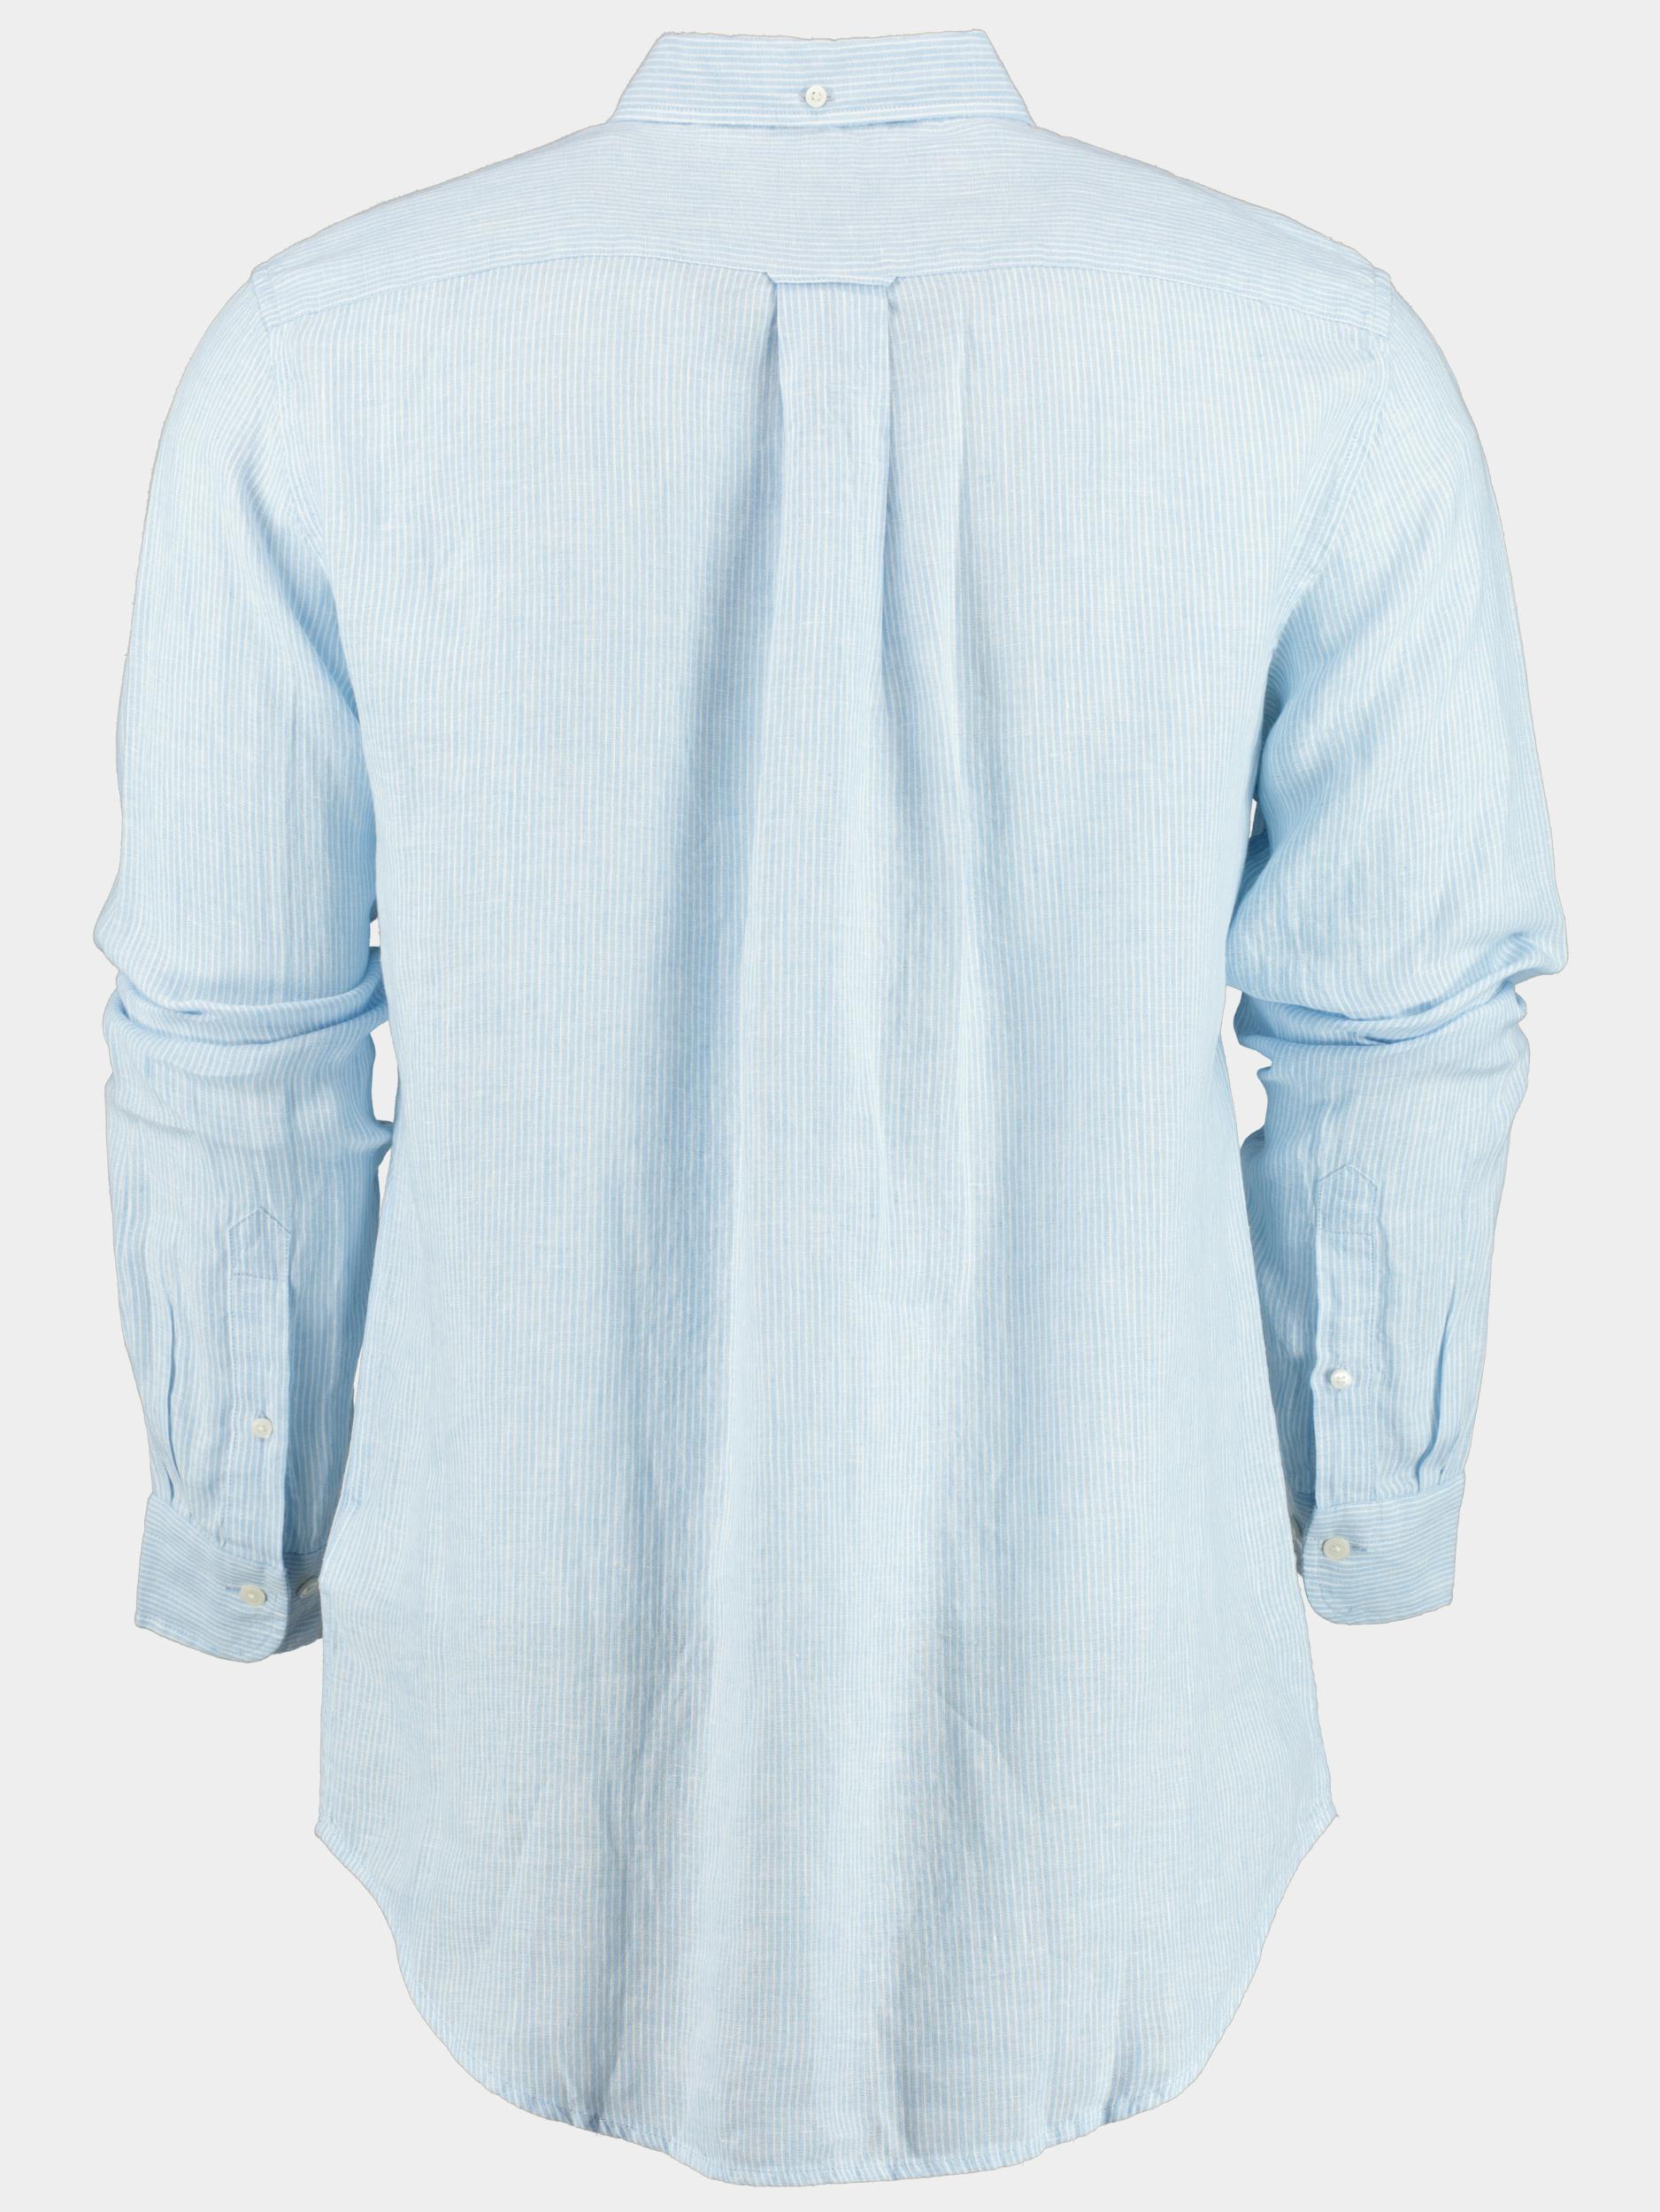 Gant Casual hemd lange mouw Blauw Reg Linen Stripe Shirt 3230081/468